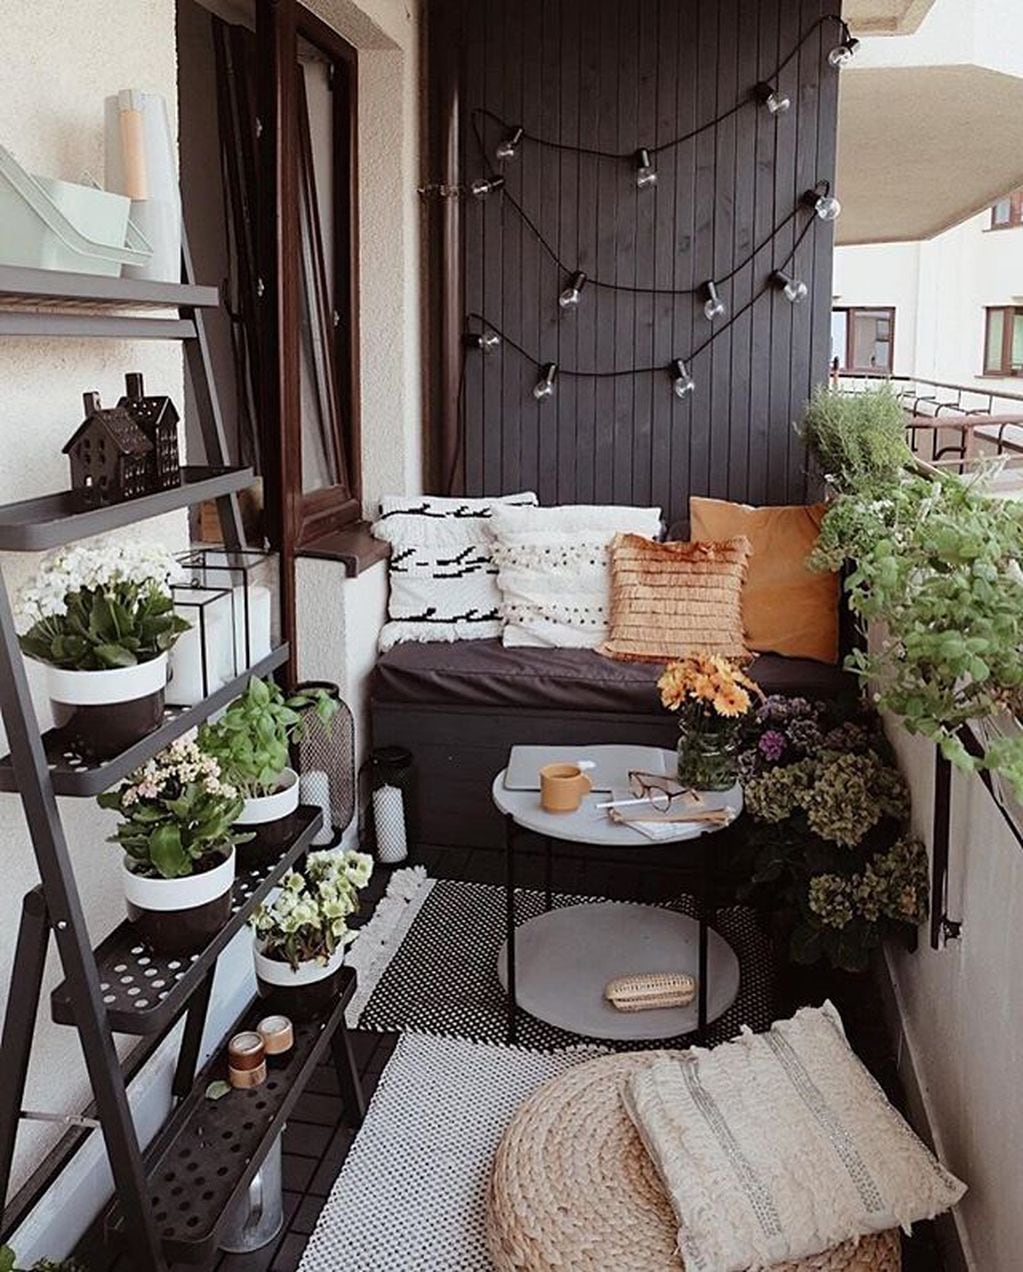 Quienes viven en departamento, los balcones se transformaron en el espacio de descanso y la búsqueda de naturaleza.